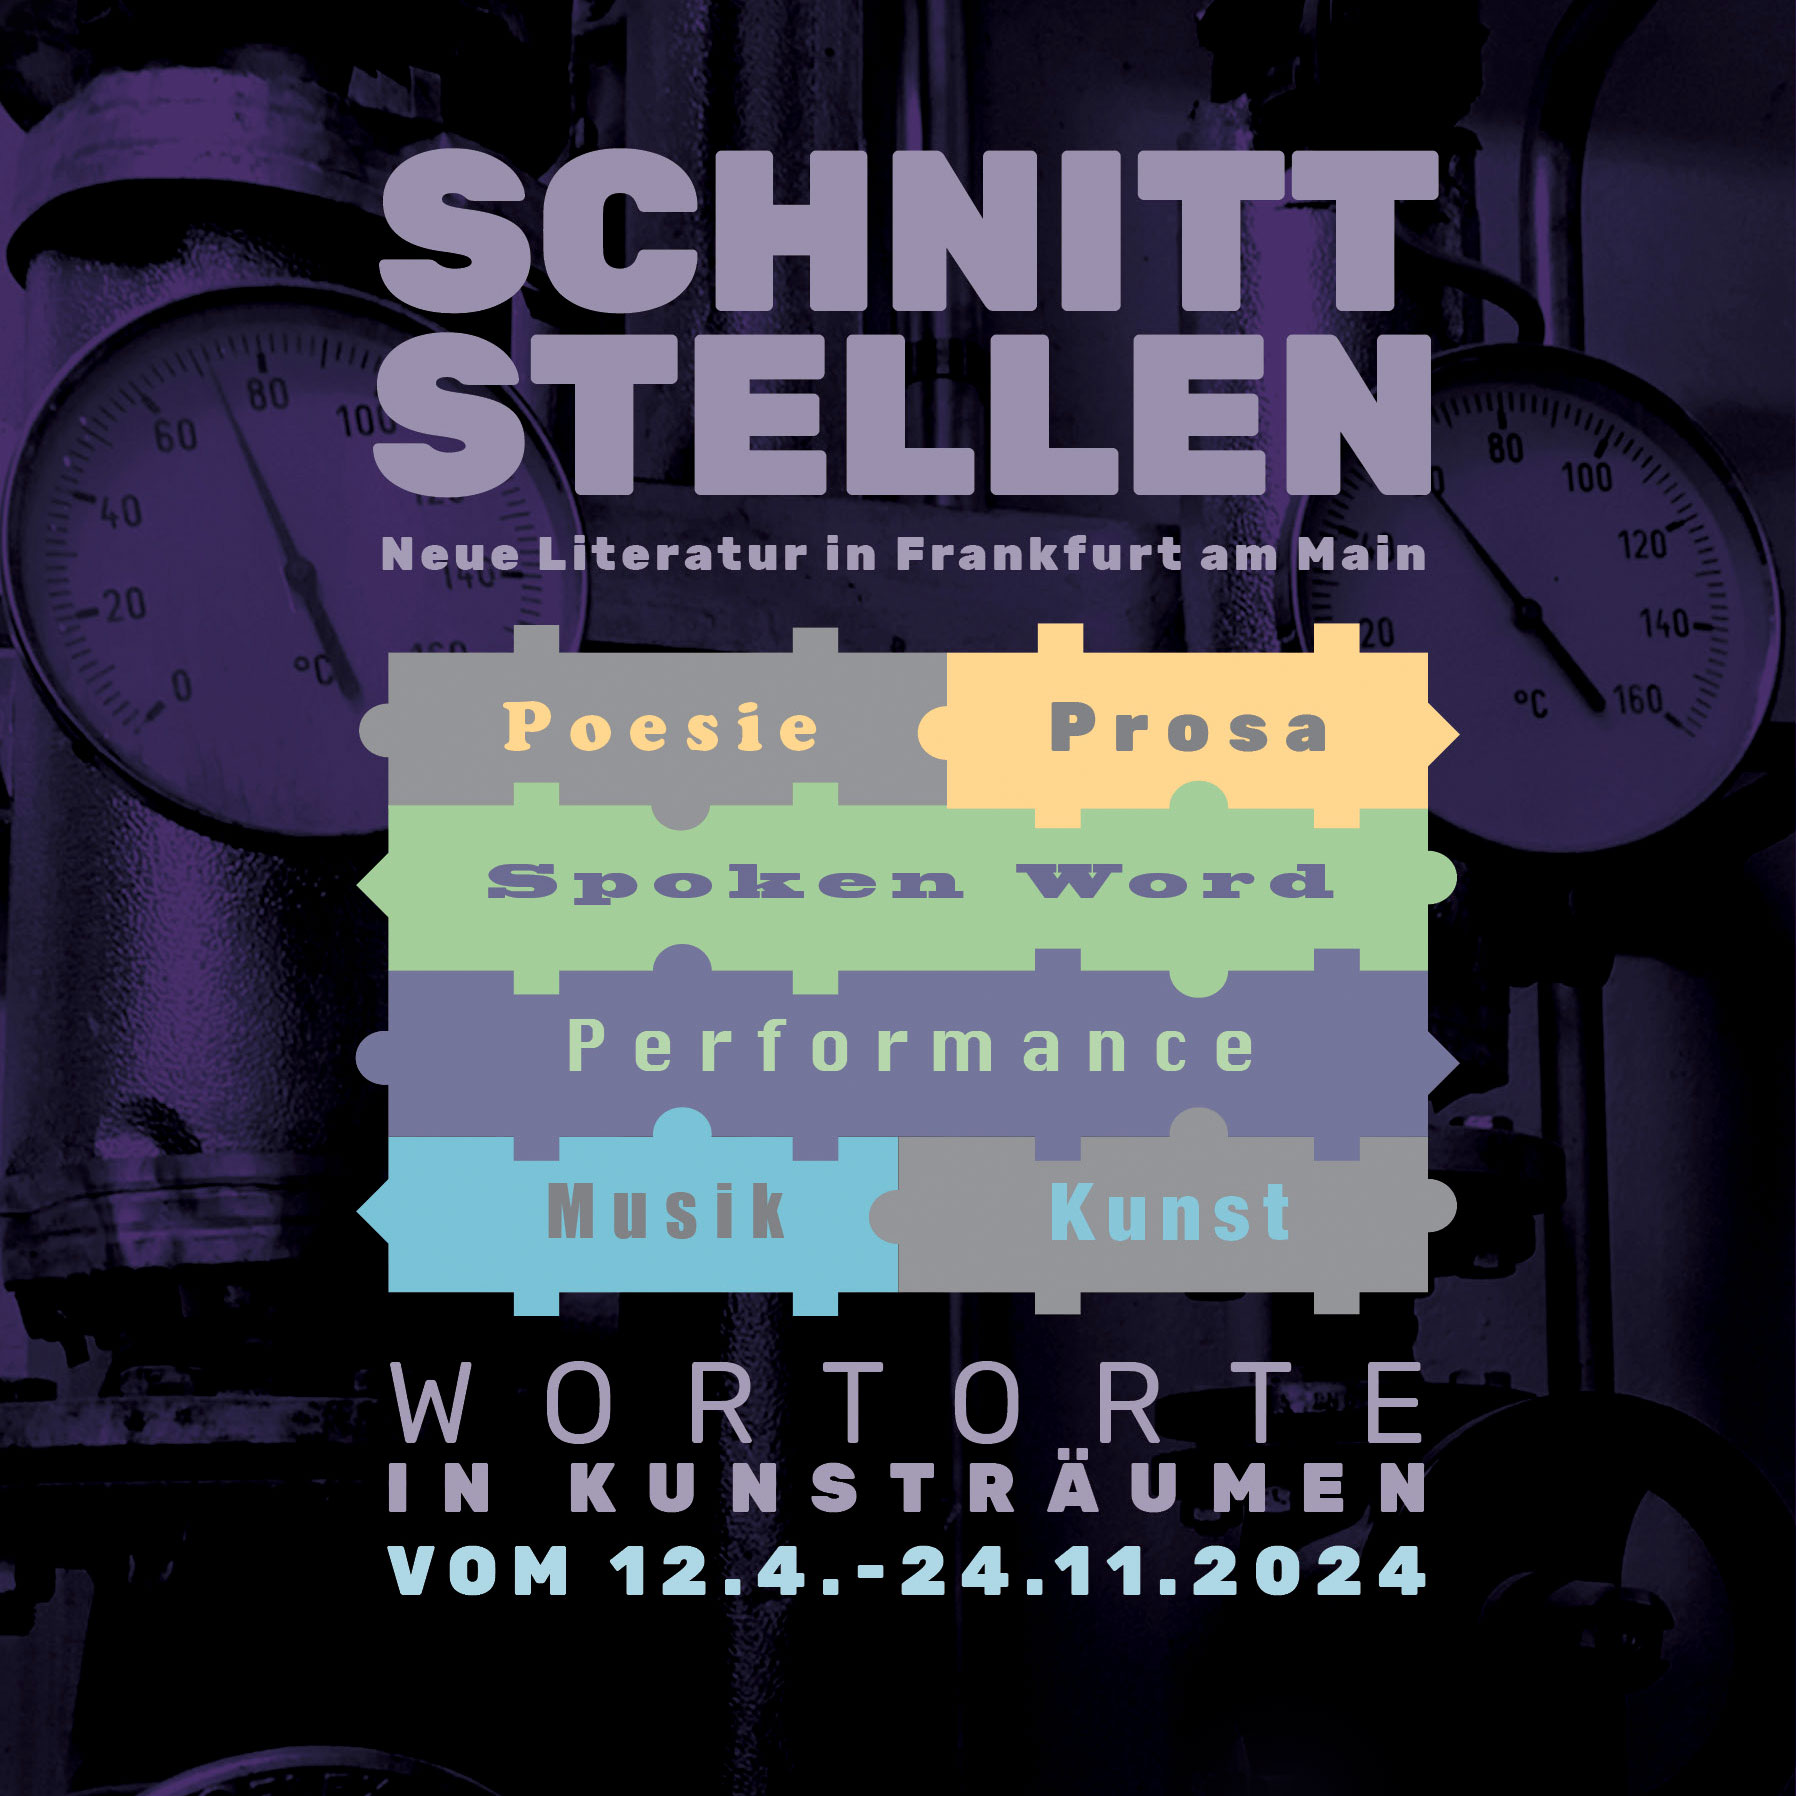 Schnittstellen – Wortorte in Kunsträumen. New art & poetry show